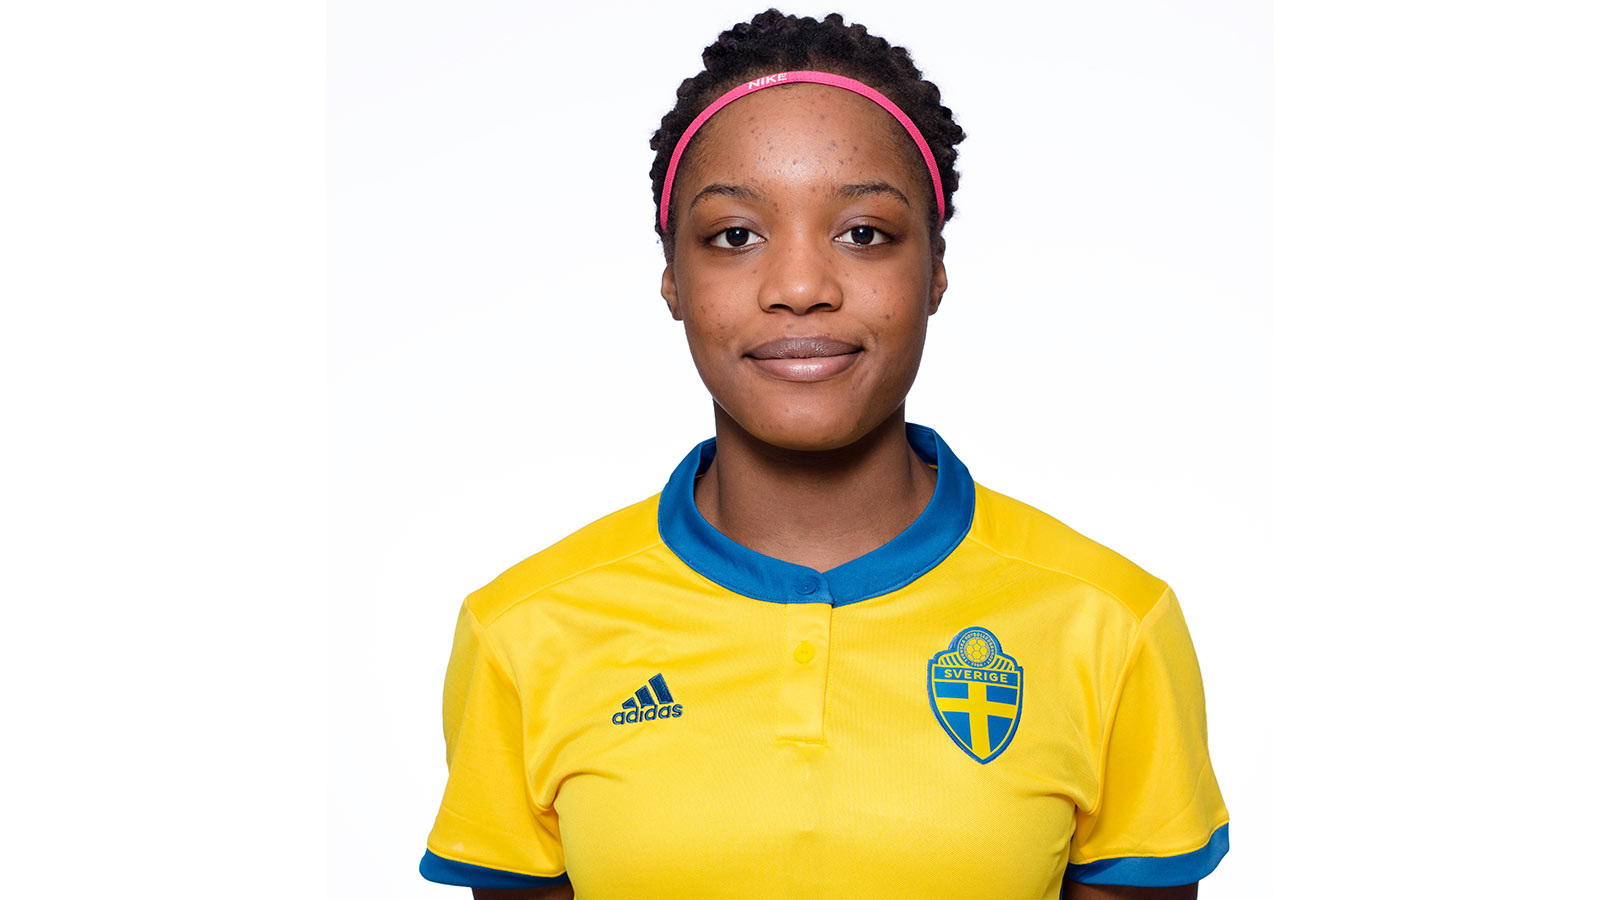 180203 Evelyn Ijeh i F17-landslaget poserar för porträtt den 3 februari 2018 i Stockholm.